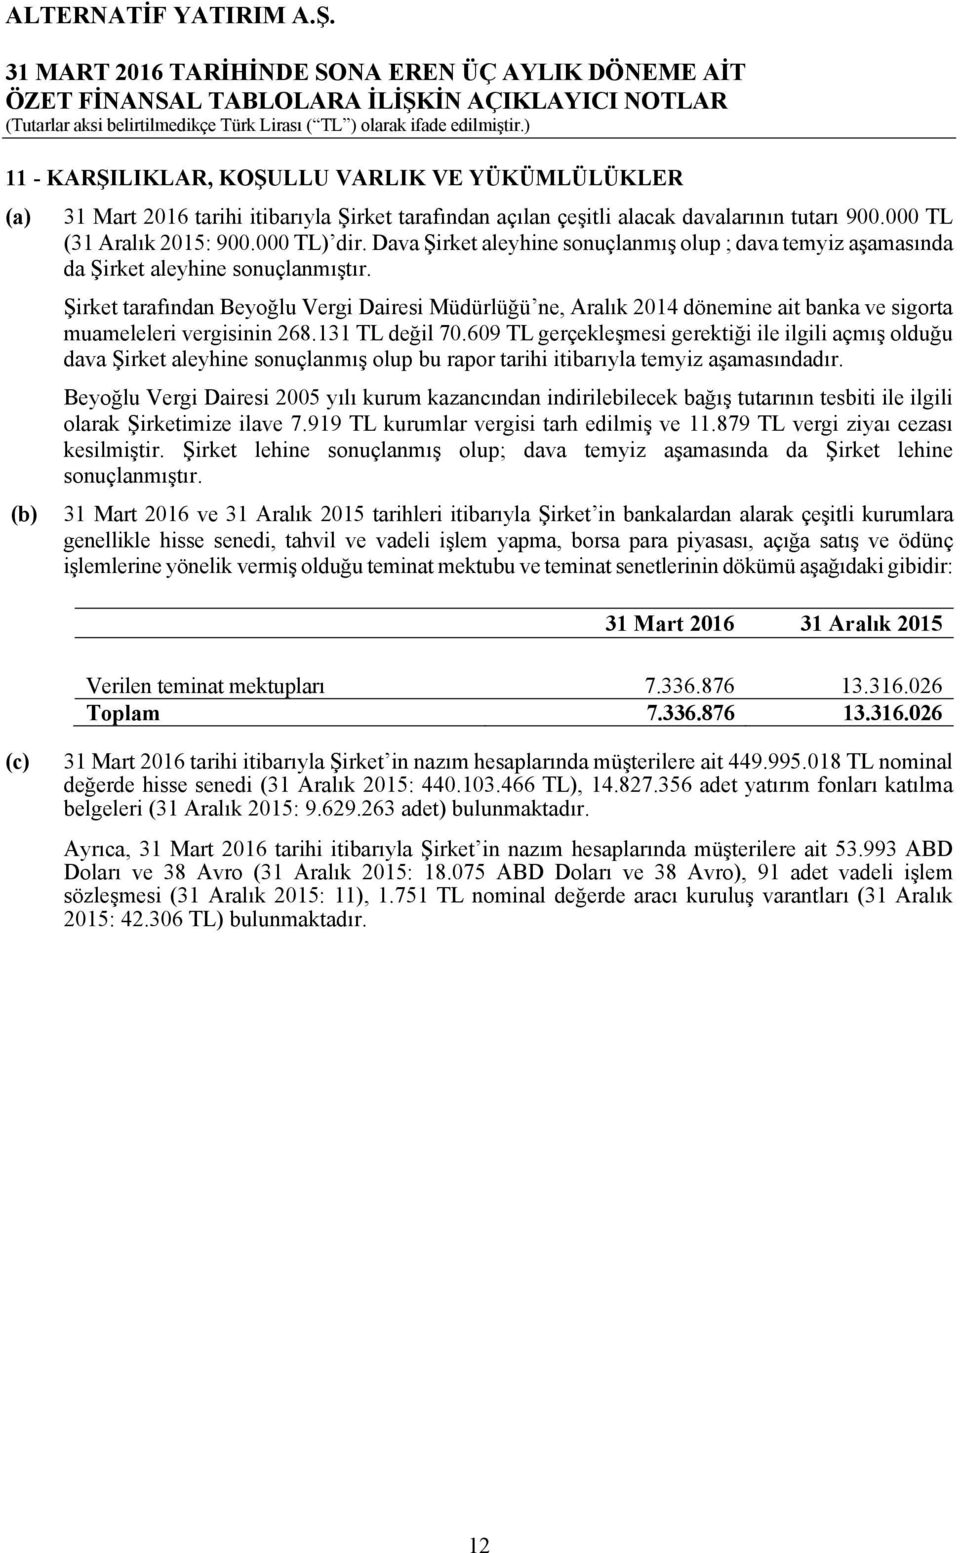 Şirket tarafından Beyoğlu Vergi Dairesi Müdürlüğü ne, Aralık 2014 dönemine ait banka ve sigorta muameleleri vergisinin 268.131 TL değil 70.